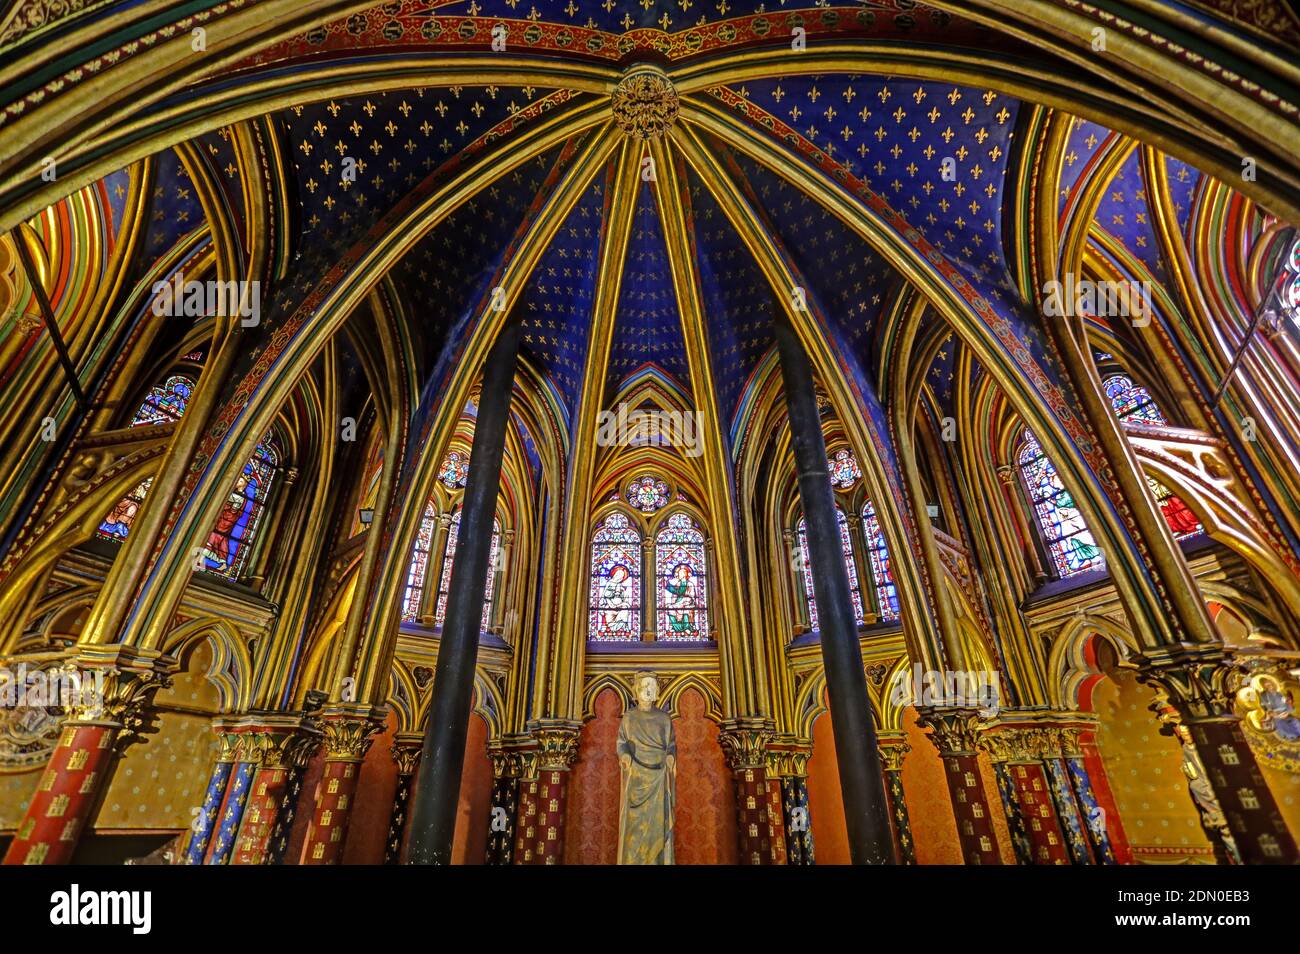 Sainte-Chapelle Royal Chapel, Gothic style, Palais de la Cite, Paris, France Stock Photo